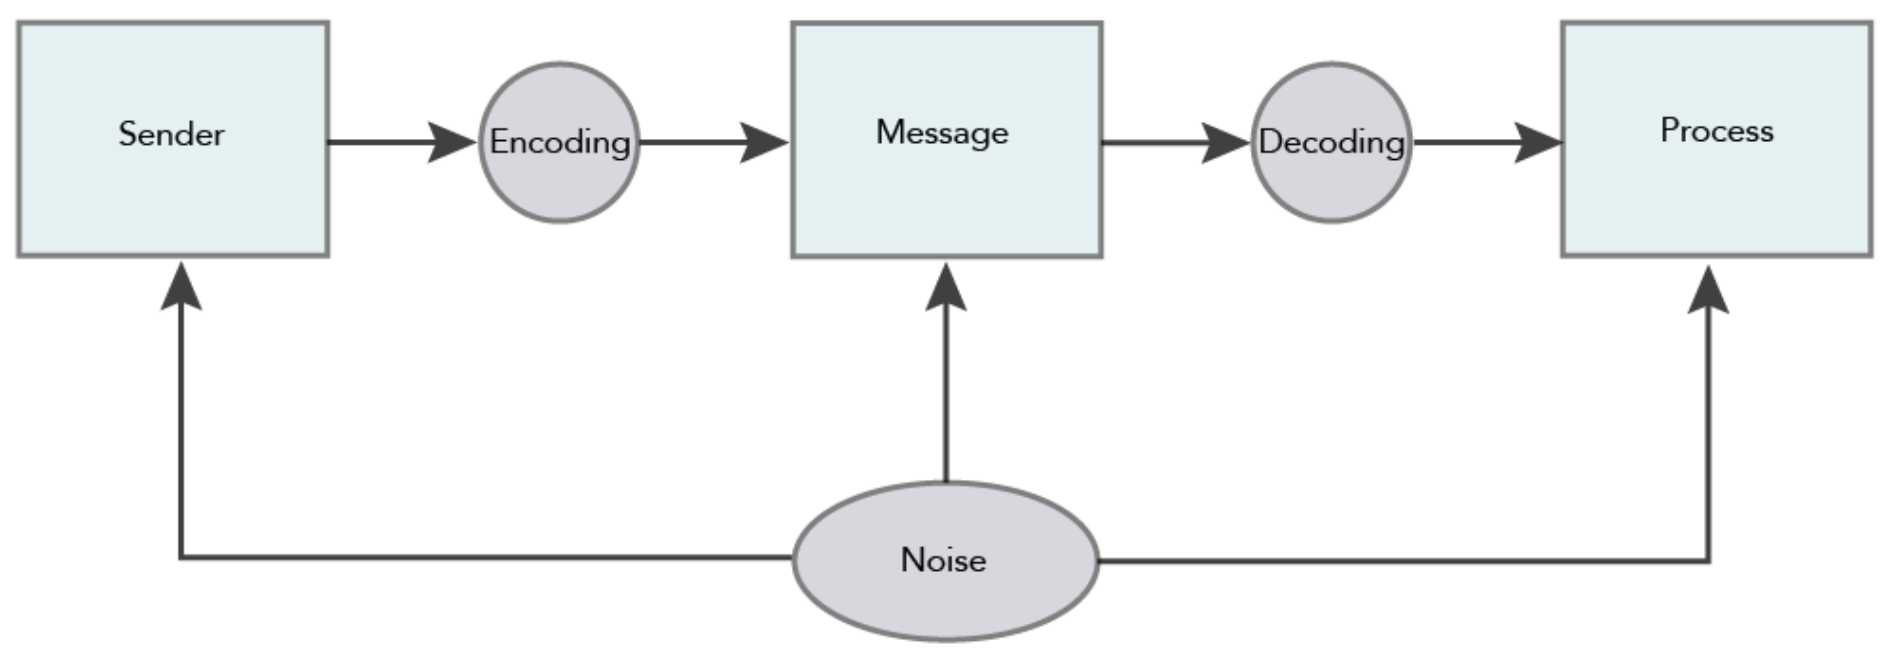 Un diagrama de flujo del modelo de comunicación social, esta vez con “ruido” que se agrega al remitente, mensaje y pasos del proceso.